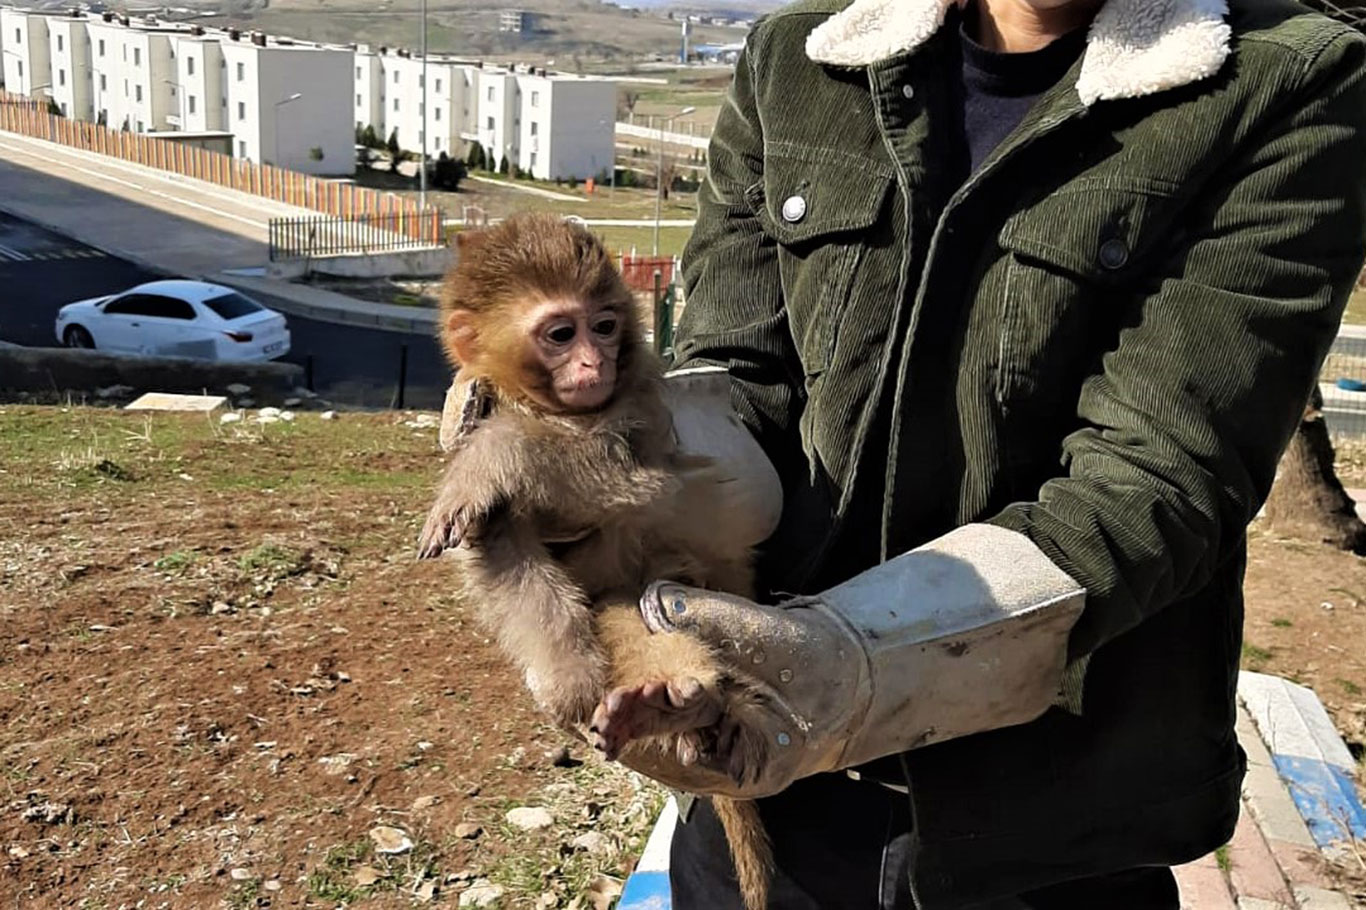 Şırnak'ta nesli tükenme tehlikesi altında olan 4 örümcek maymunu ele geçirildi